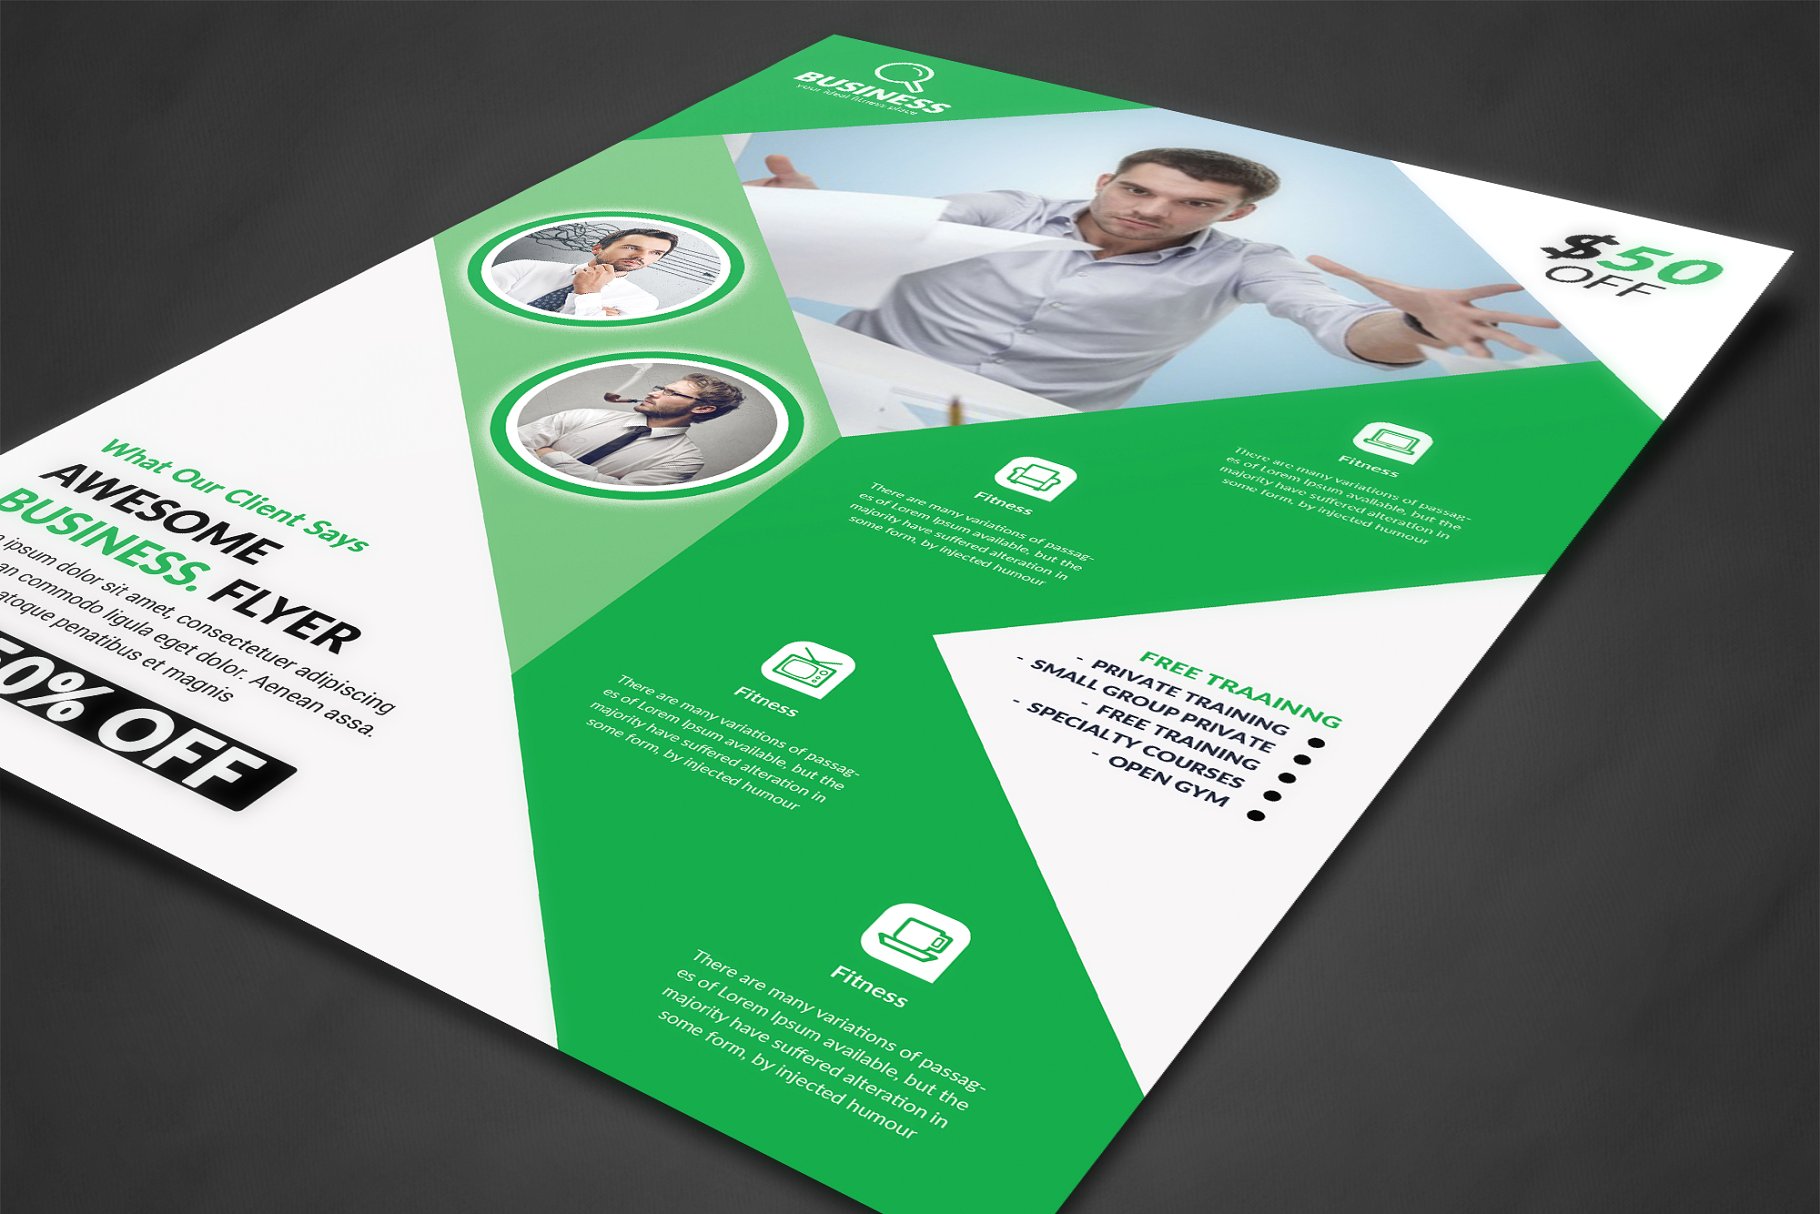 培训机构商务合作宣传传单设计模板 Corporate Flyer Print Templates插图(1)